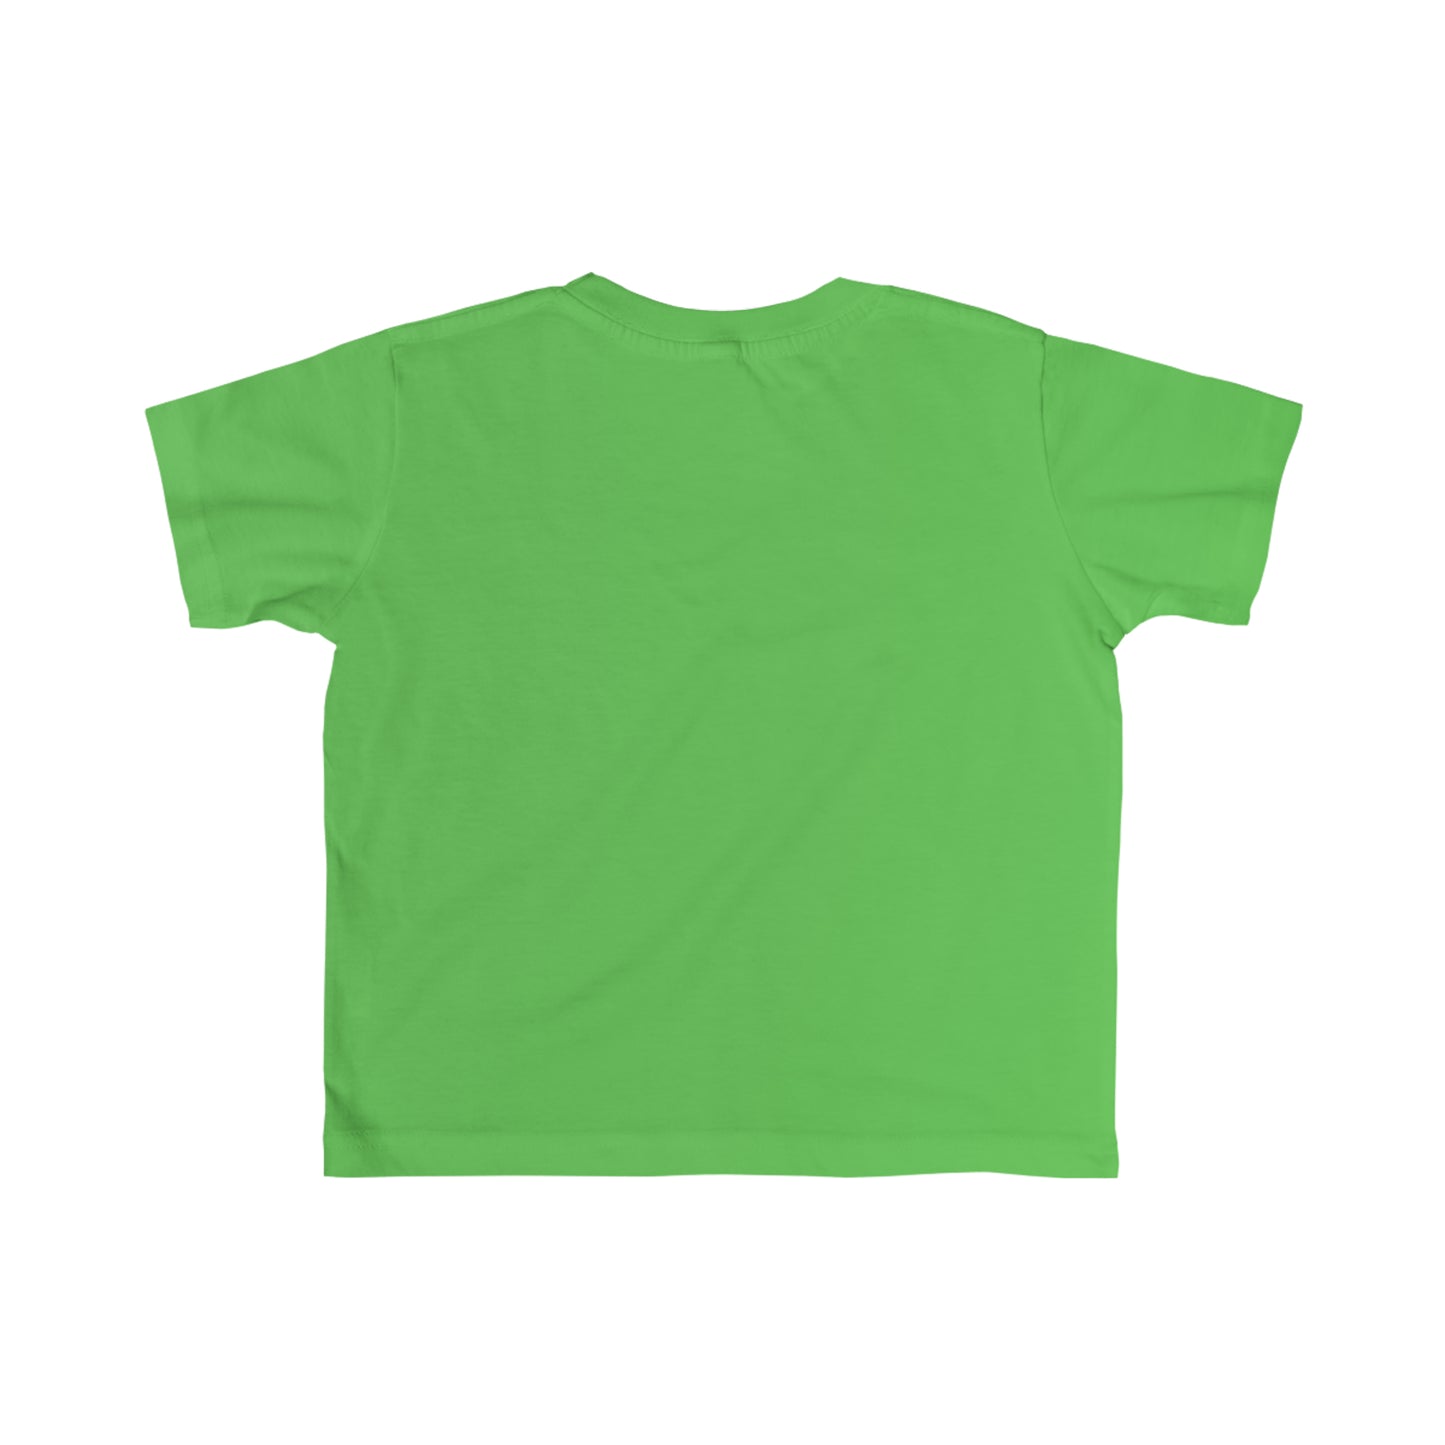 Super Pika Bros - Toddler Green